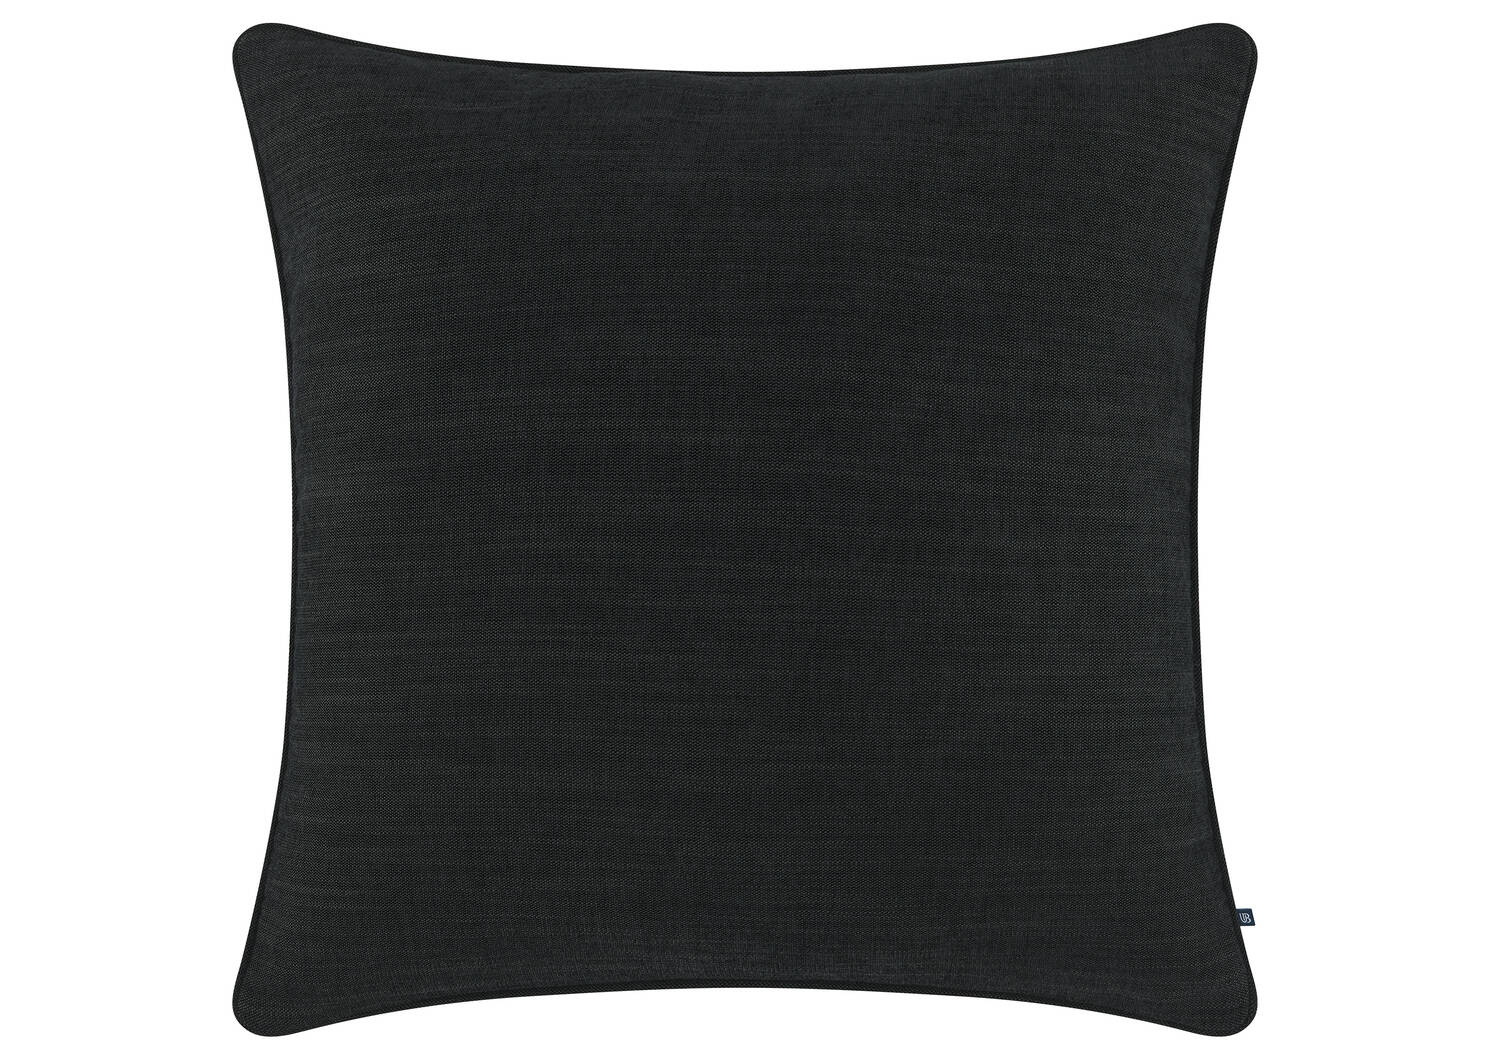 Bailey Pillow 24x24 Black